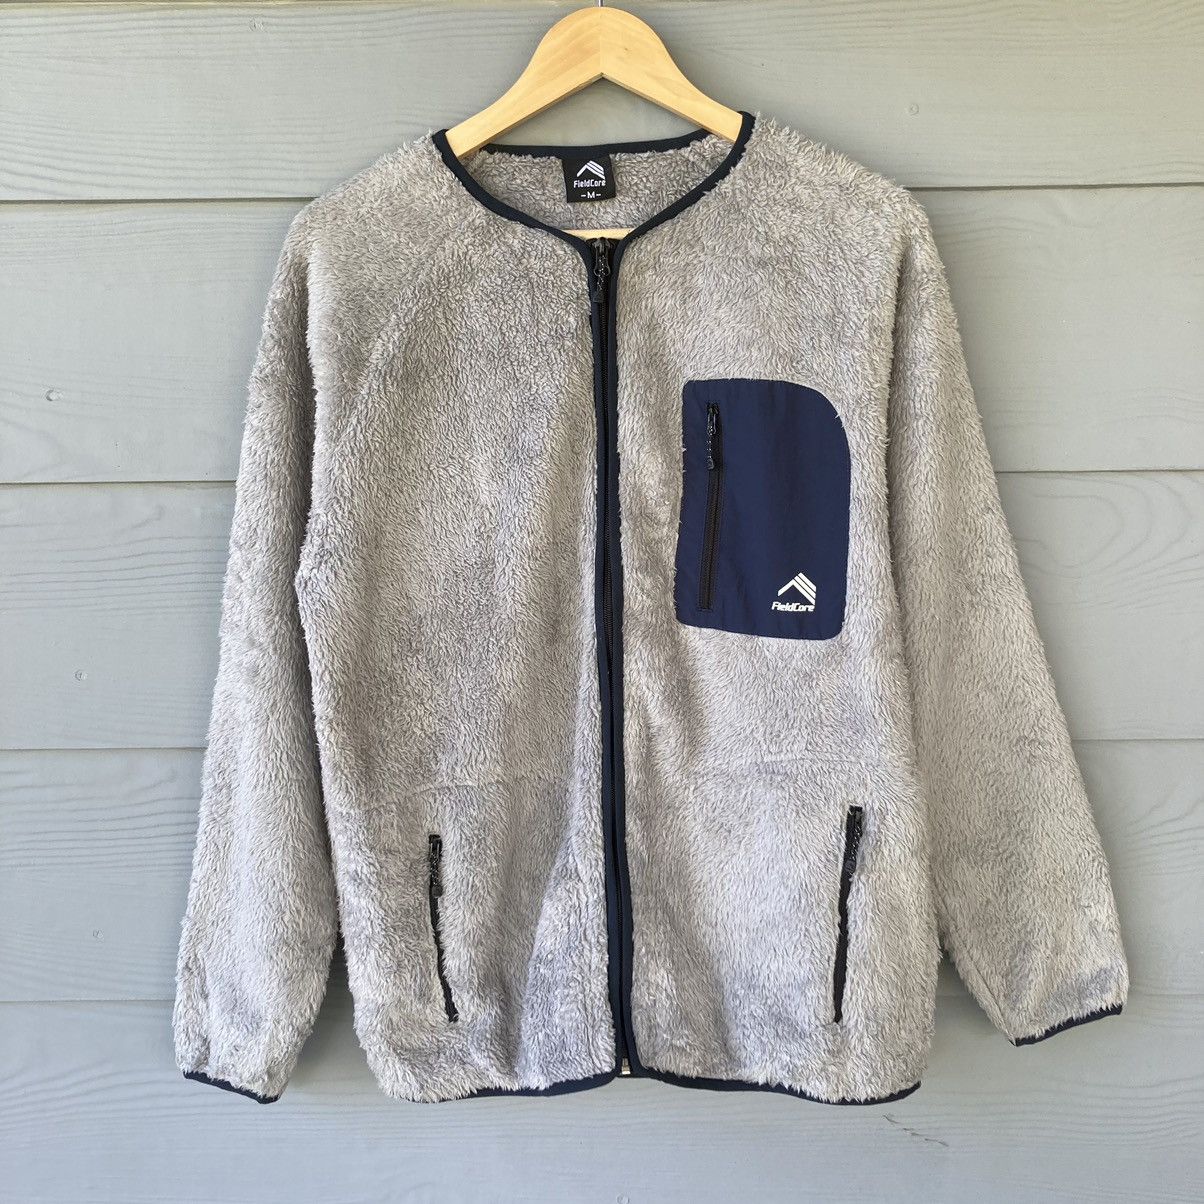 Vintage Fieldcore Fleece Sweater - 1